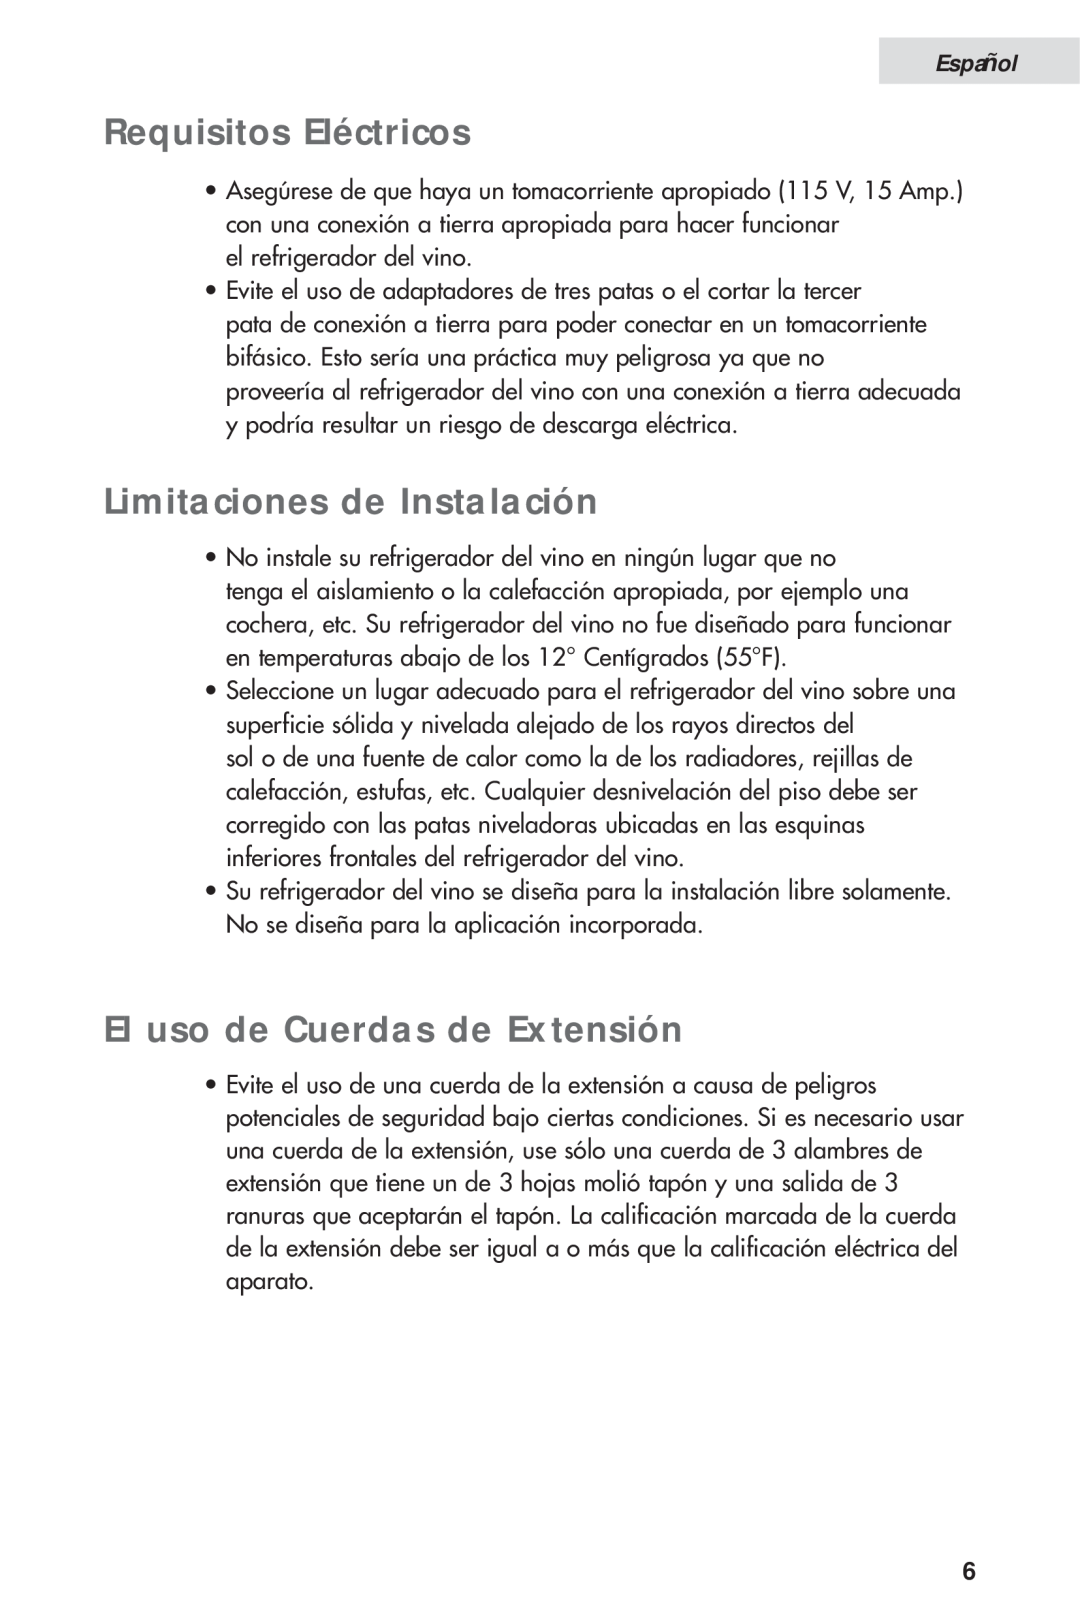 Haier HVH014A manual Requisitos Eléctricos, Limitaciones de Instalación, El uso de Cuerdas de Extensión, Español 